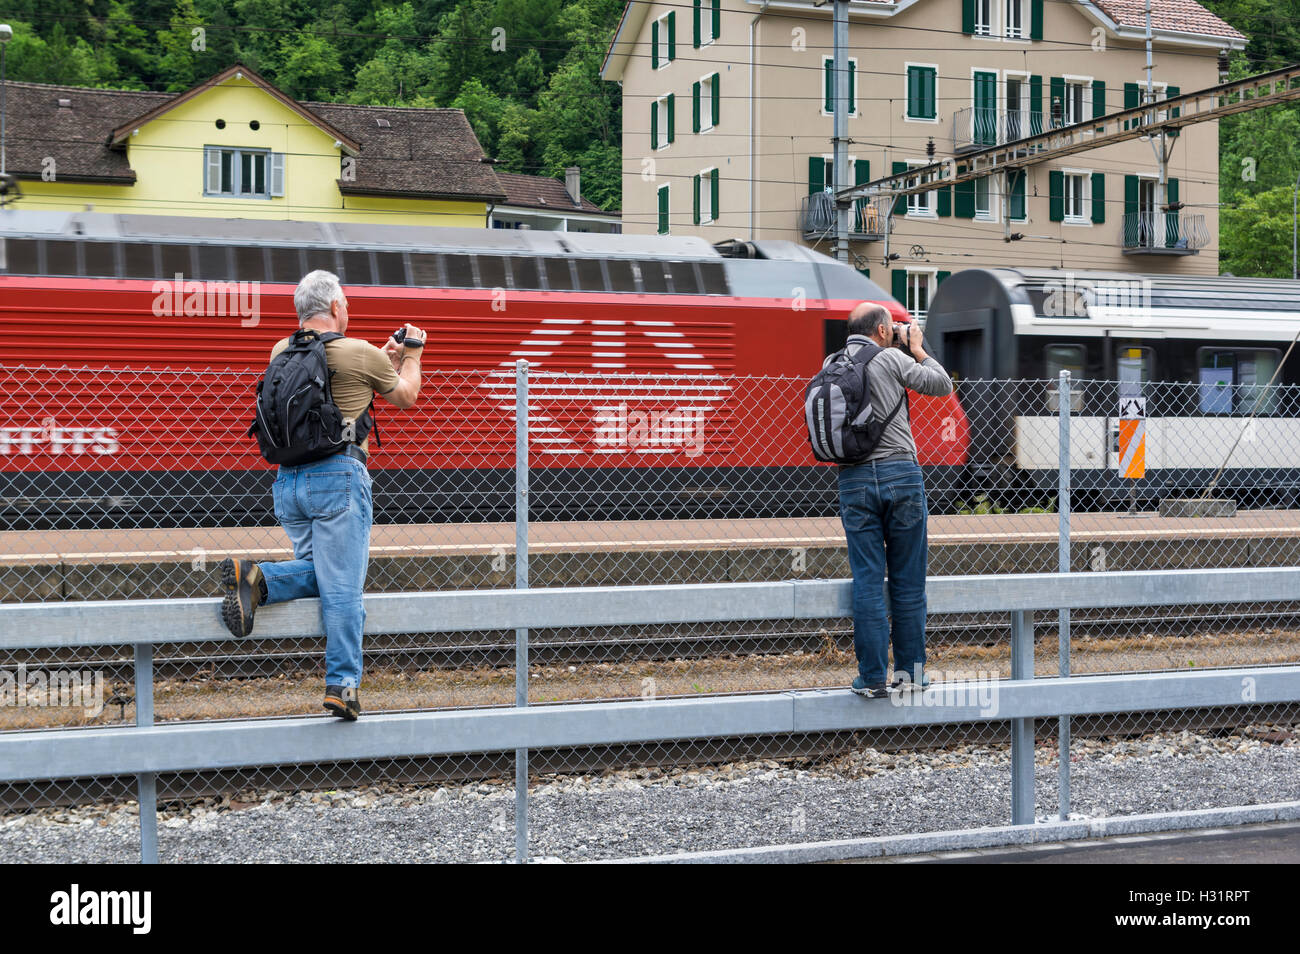 Trainspotters riprese video e le foto del passaggio di un treno con una locomotiva di colore rosso con le FFS Ferrovie Federali Svizzere logo. Erstfeld, Svizzera. Foto Stock